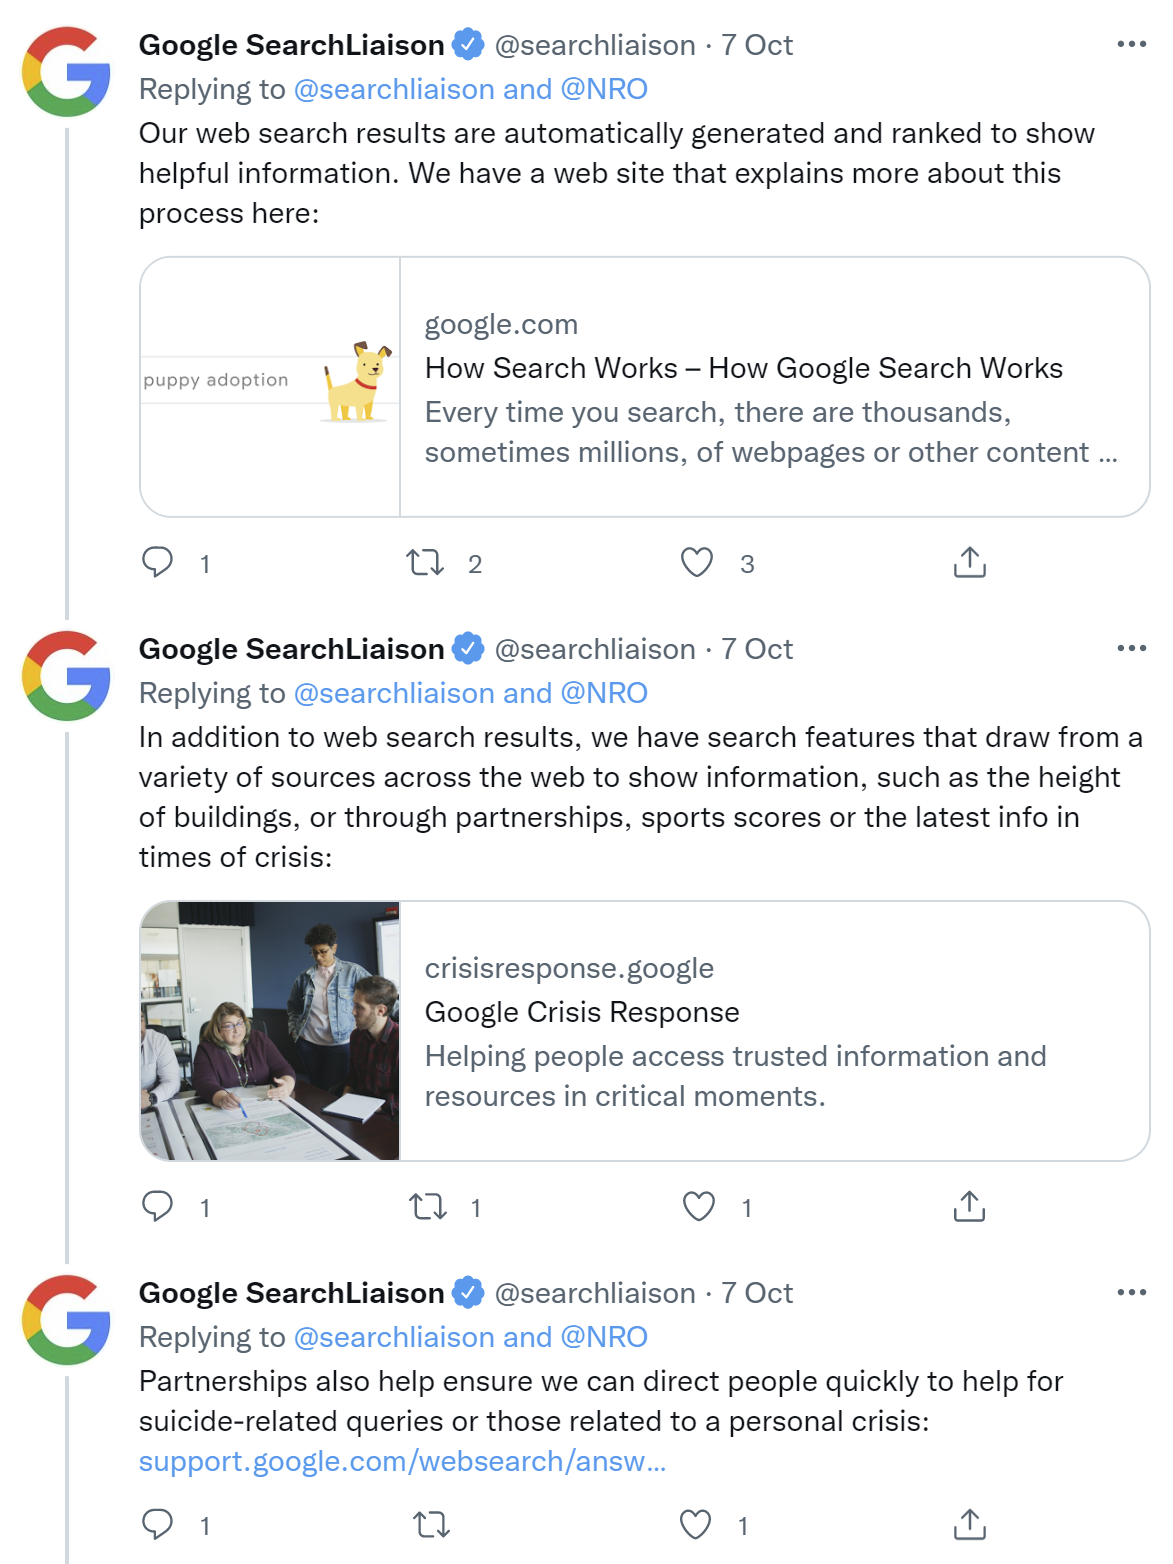 Google: Webergebnisse werden automatisch erstellt, doch es gibt weitere Suche-Features